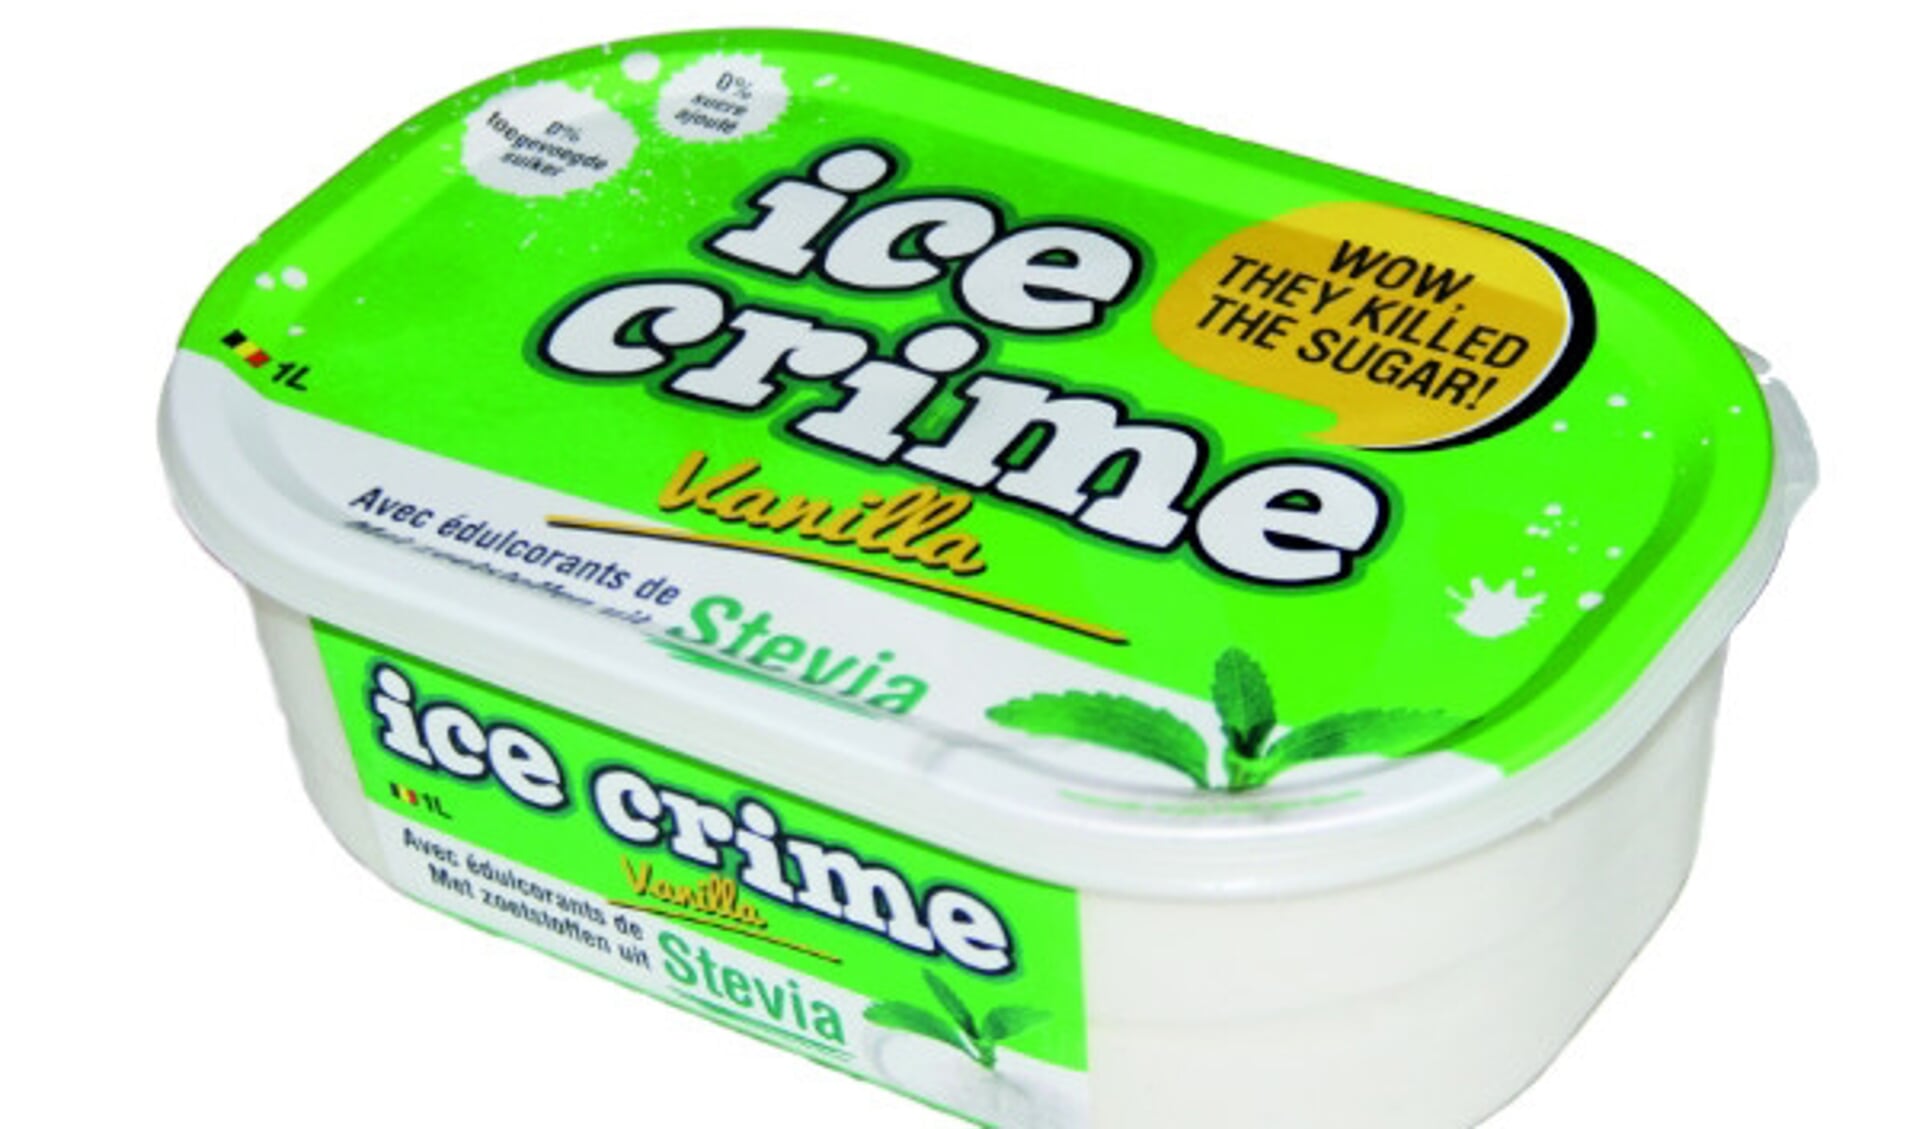 Just Ice lanceert ‘Stevia-gezoet’ ambachtelijk roomijs